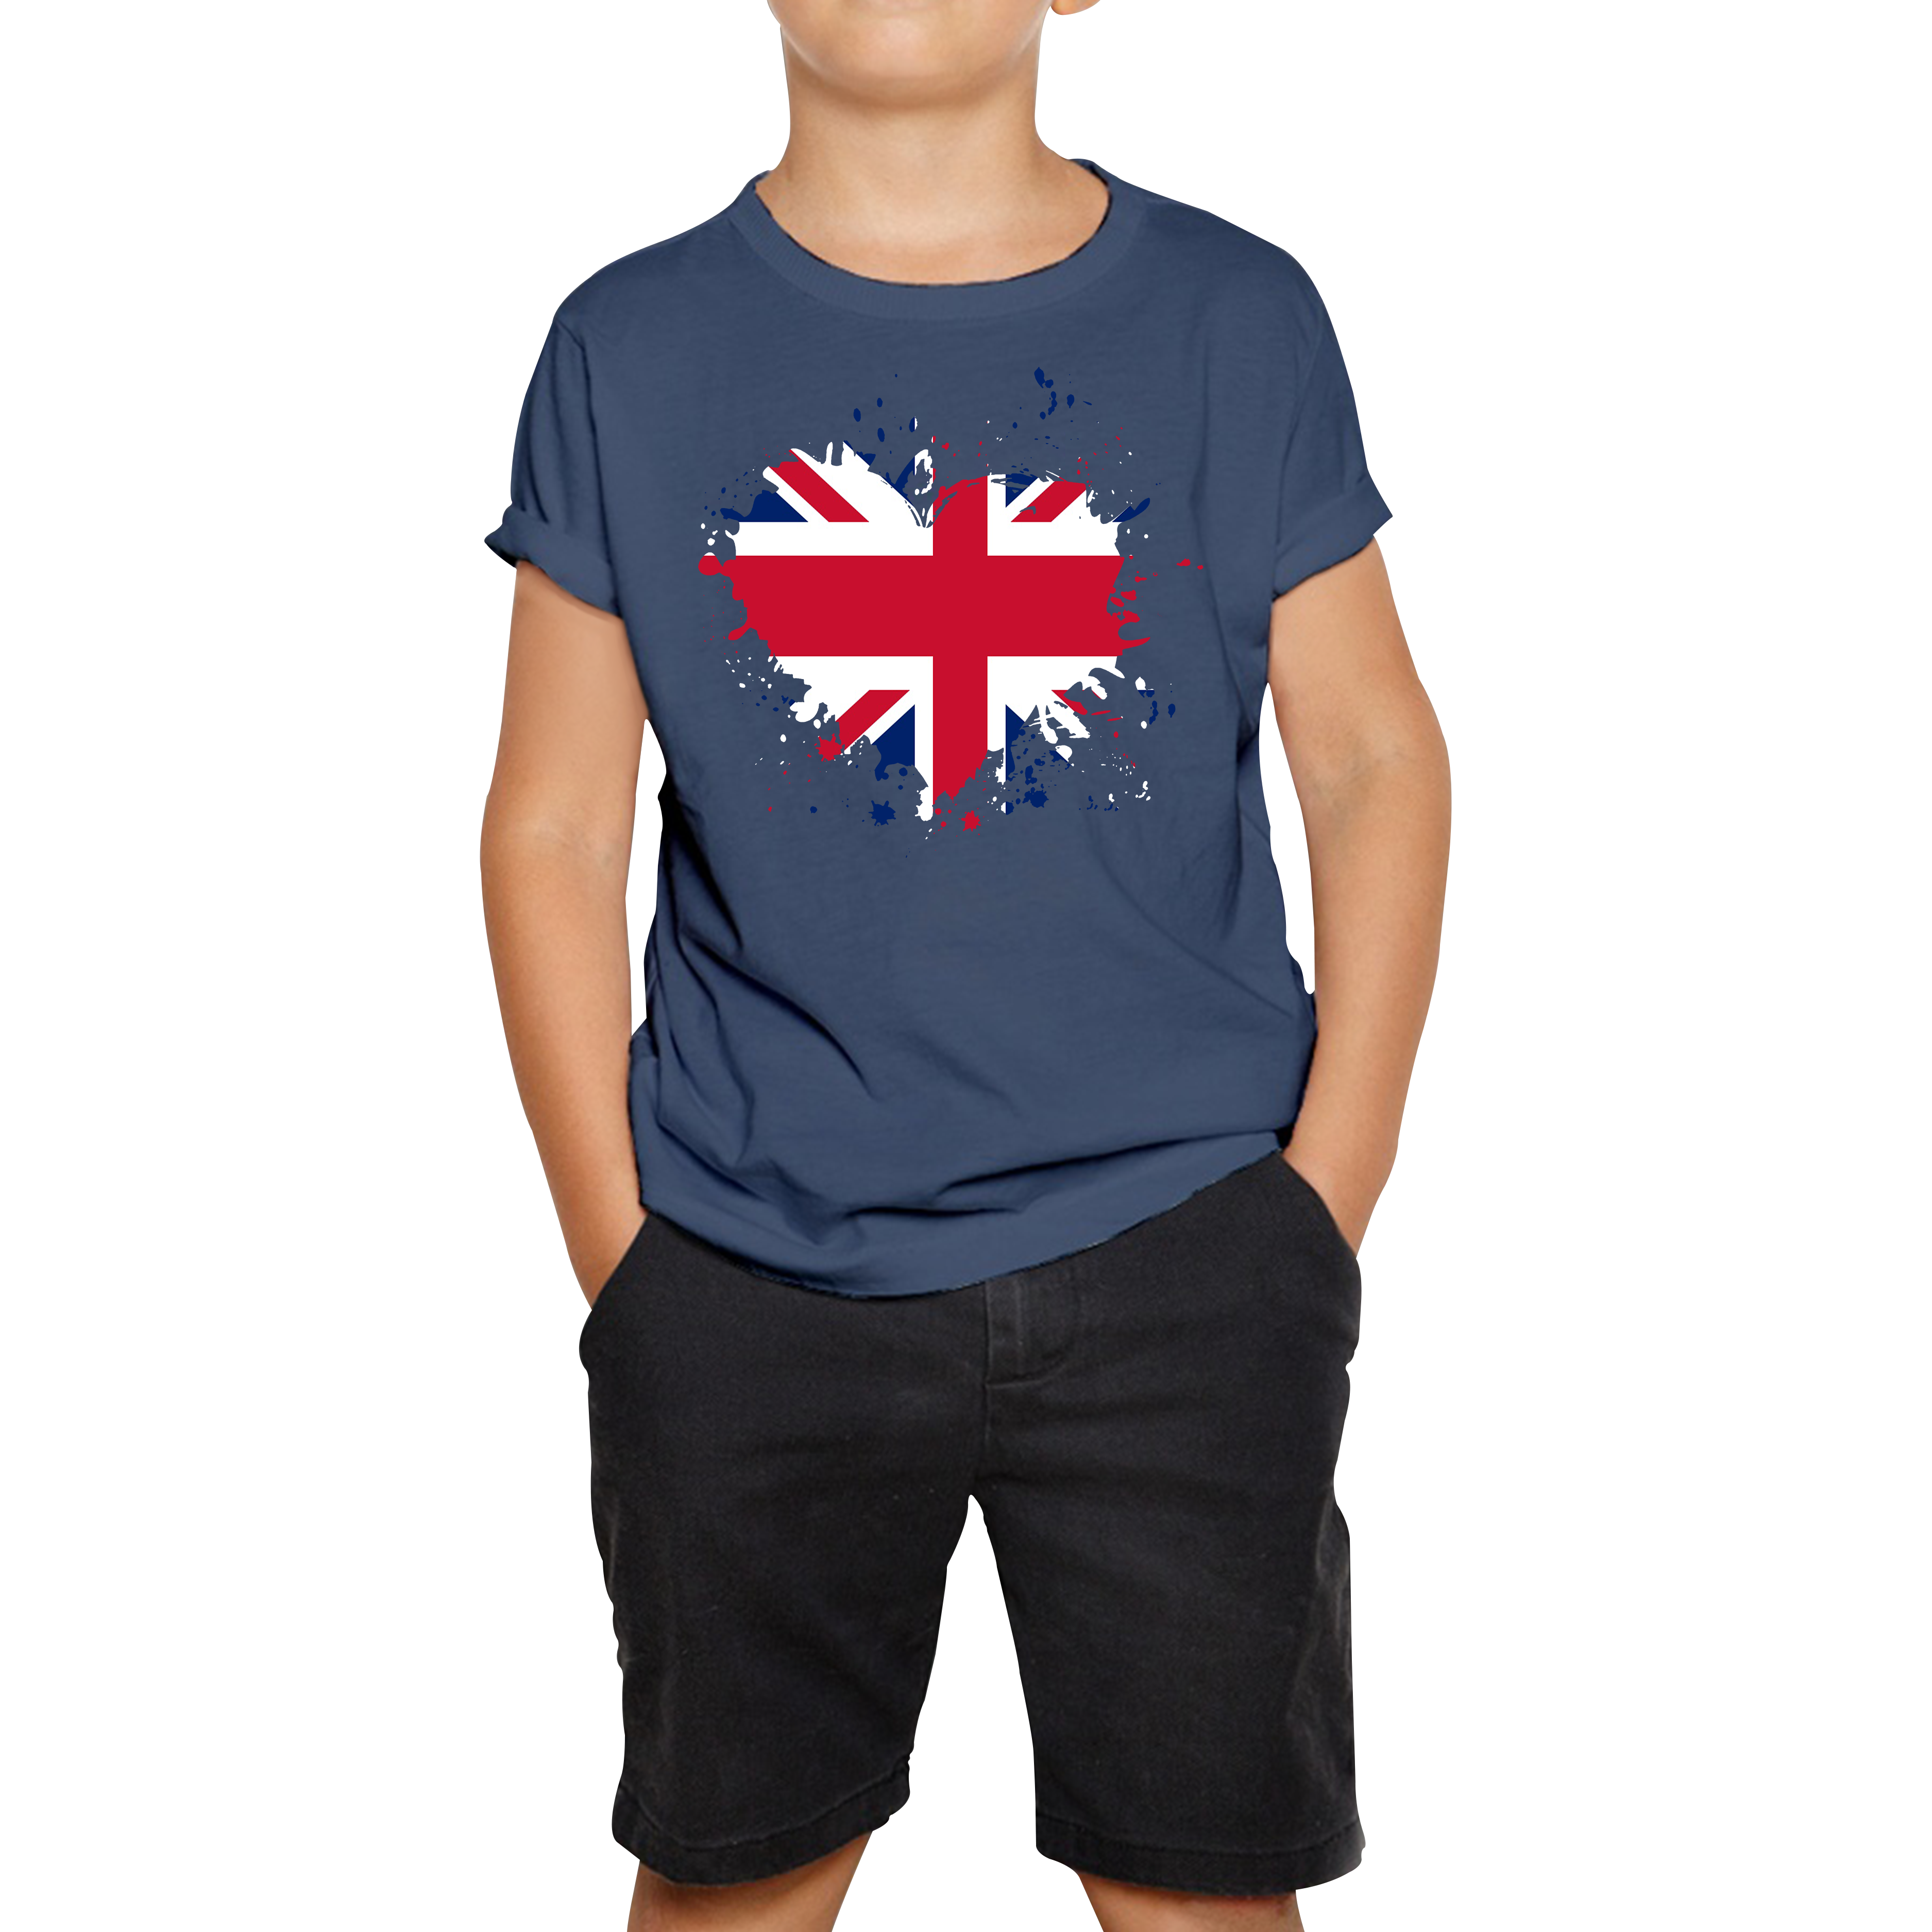 Union Jack UK Flag Heart Britain England United Kingdom Kids Tee